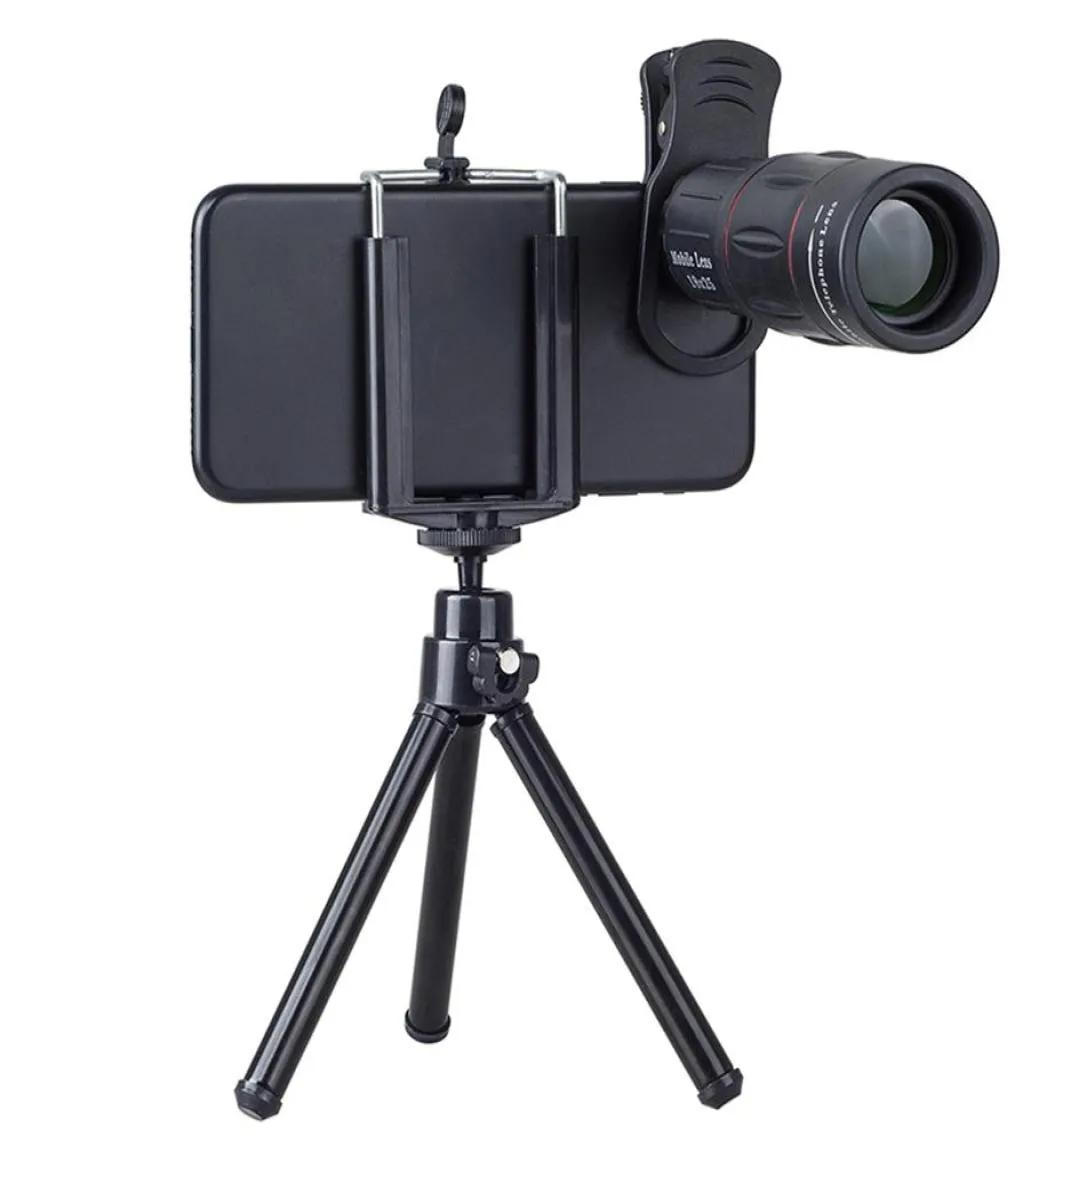 Universal 18x Teleskop Büyütme Zoom Cep Telefonu Monoküler Monoculars Samsung Xiao8019513 için iPhone için Klip Tripod ile Kamera Kamera Lens